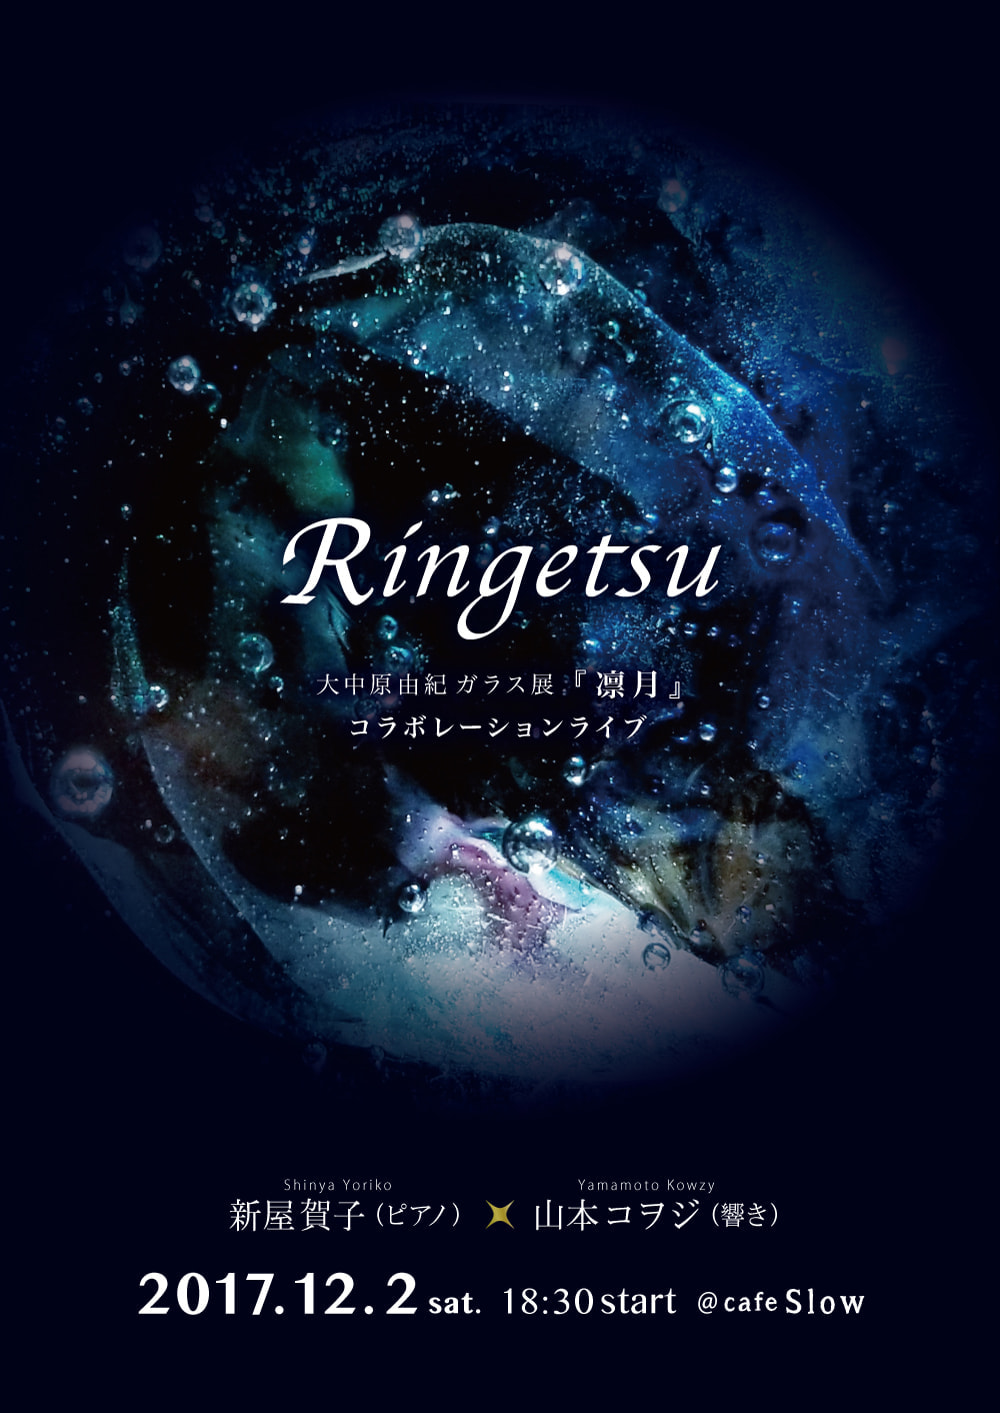 コラボレーションライブ『Ringetsu』出演：新屋賀子.山本コヲジ.若桑比織